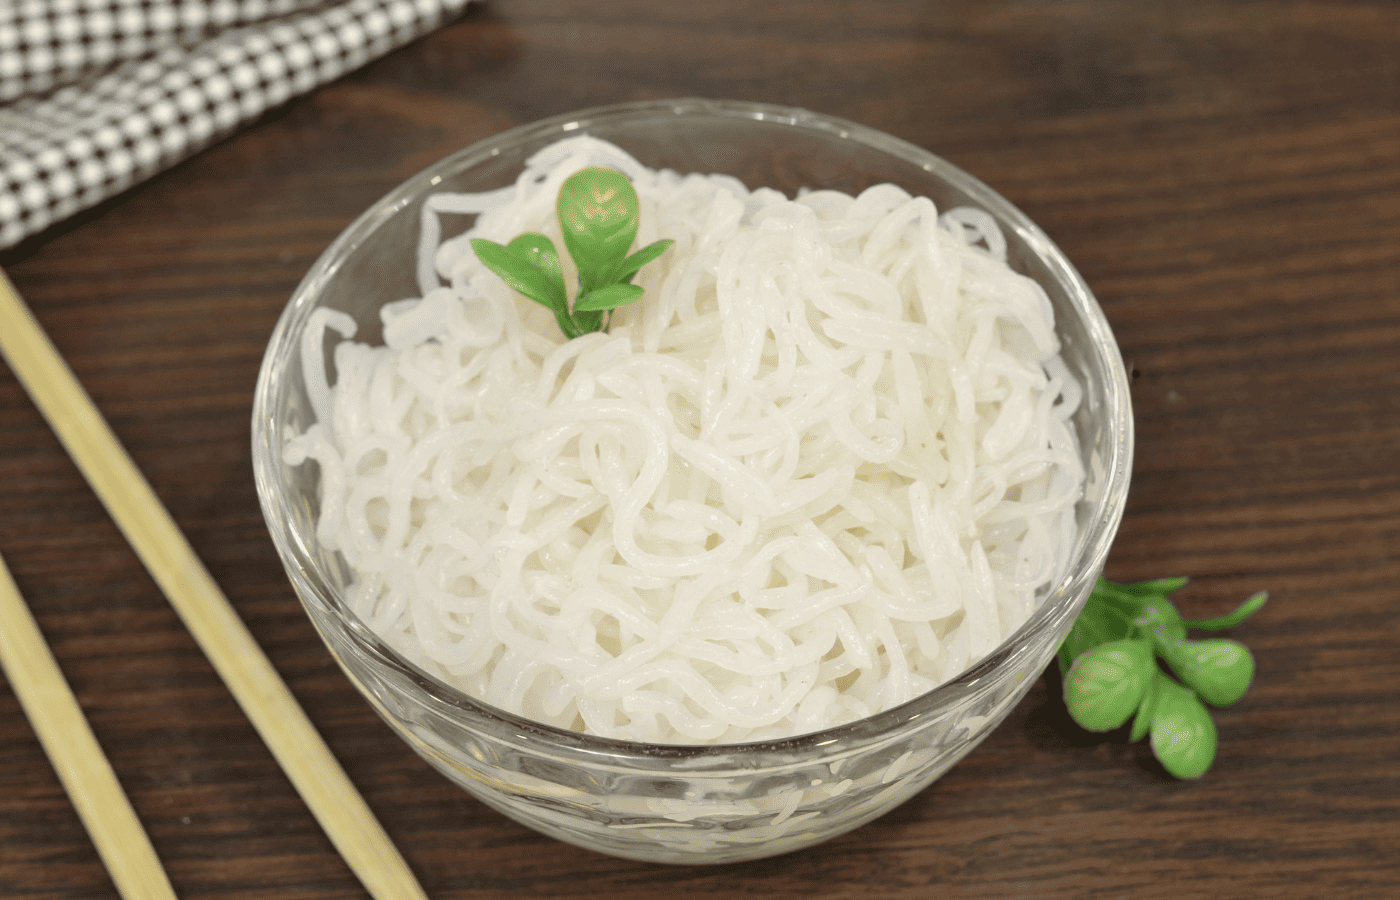 Does Trader Joe’s sell Shirataki noodles